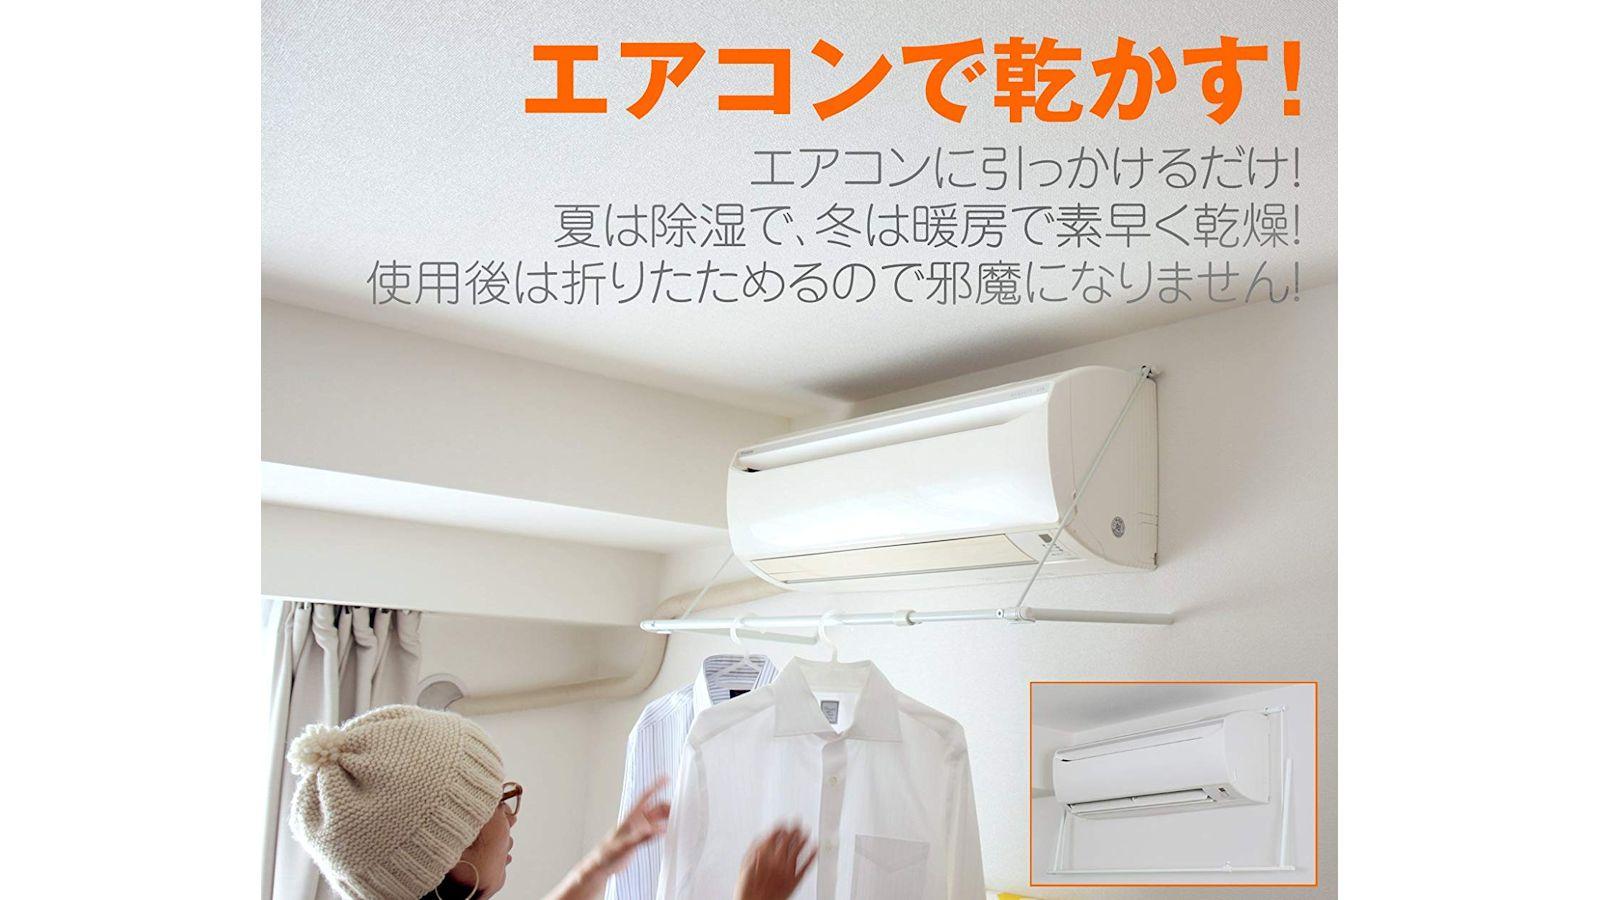 エアコンに引っ掛ける伸縮ハンガー。部屋干しの場所ができ、効率